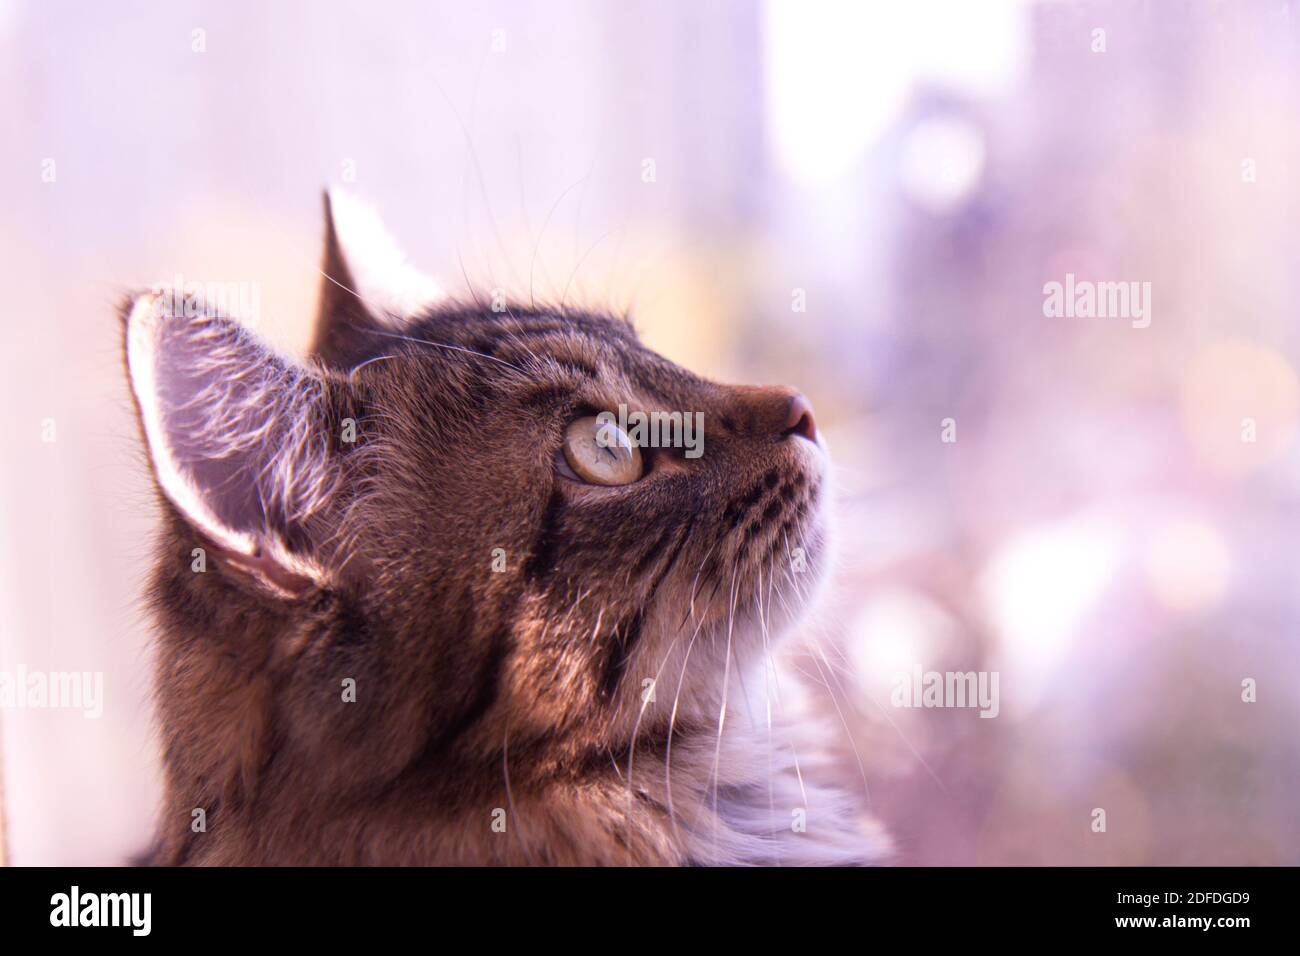 Joli chat gris moelleux près de la fenêtre. Animaux de compagnie, chats de race, protection de la nature. Arrière-plan violet flou à l'extérieur de la fenêtre Banque D'Images